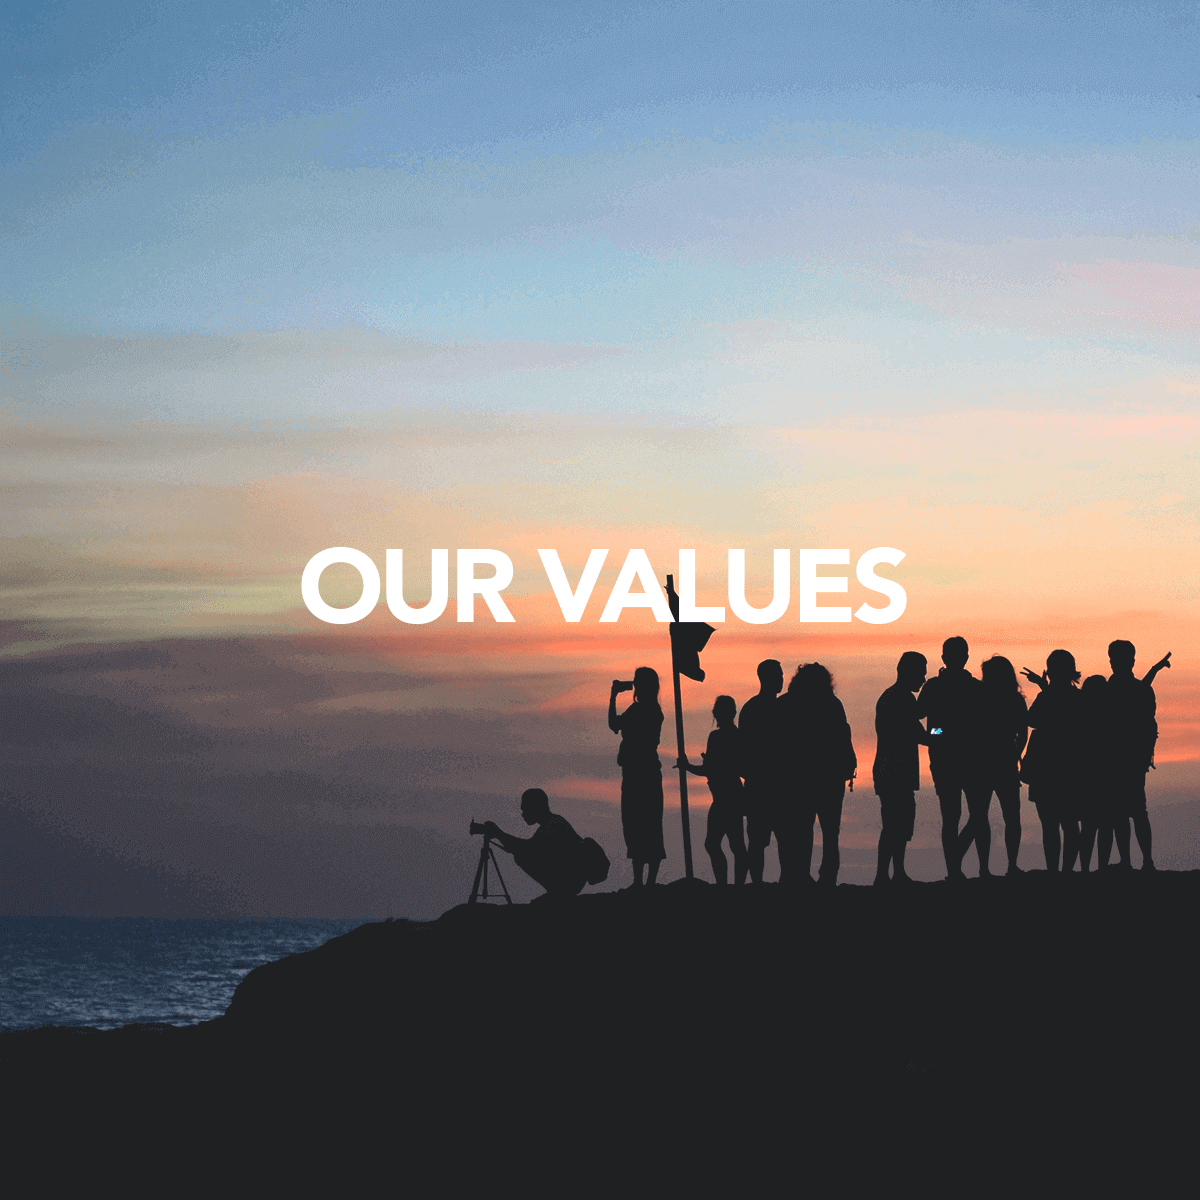 Nuestros valores